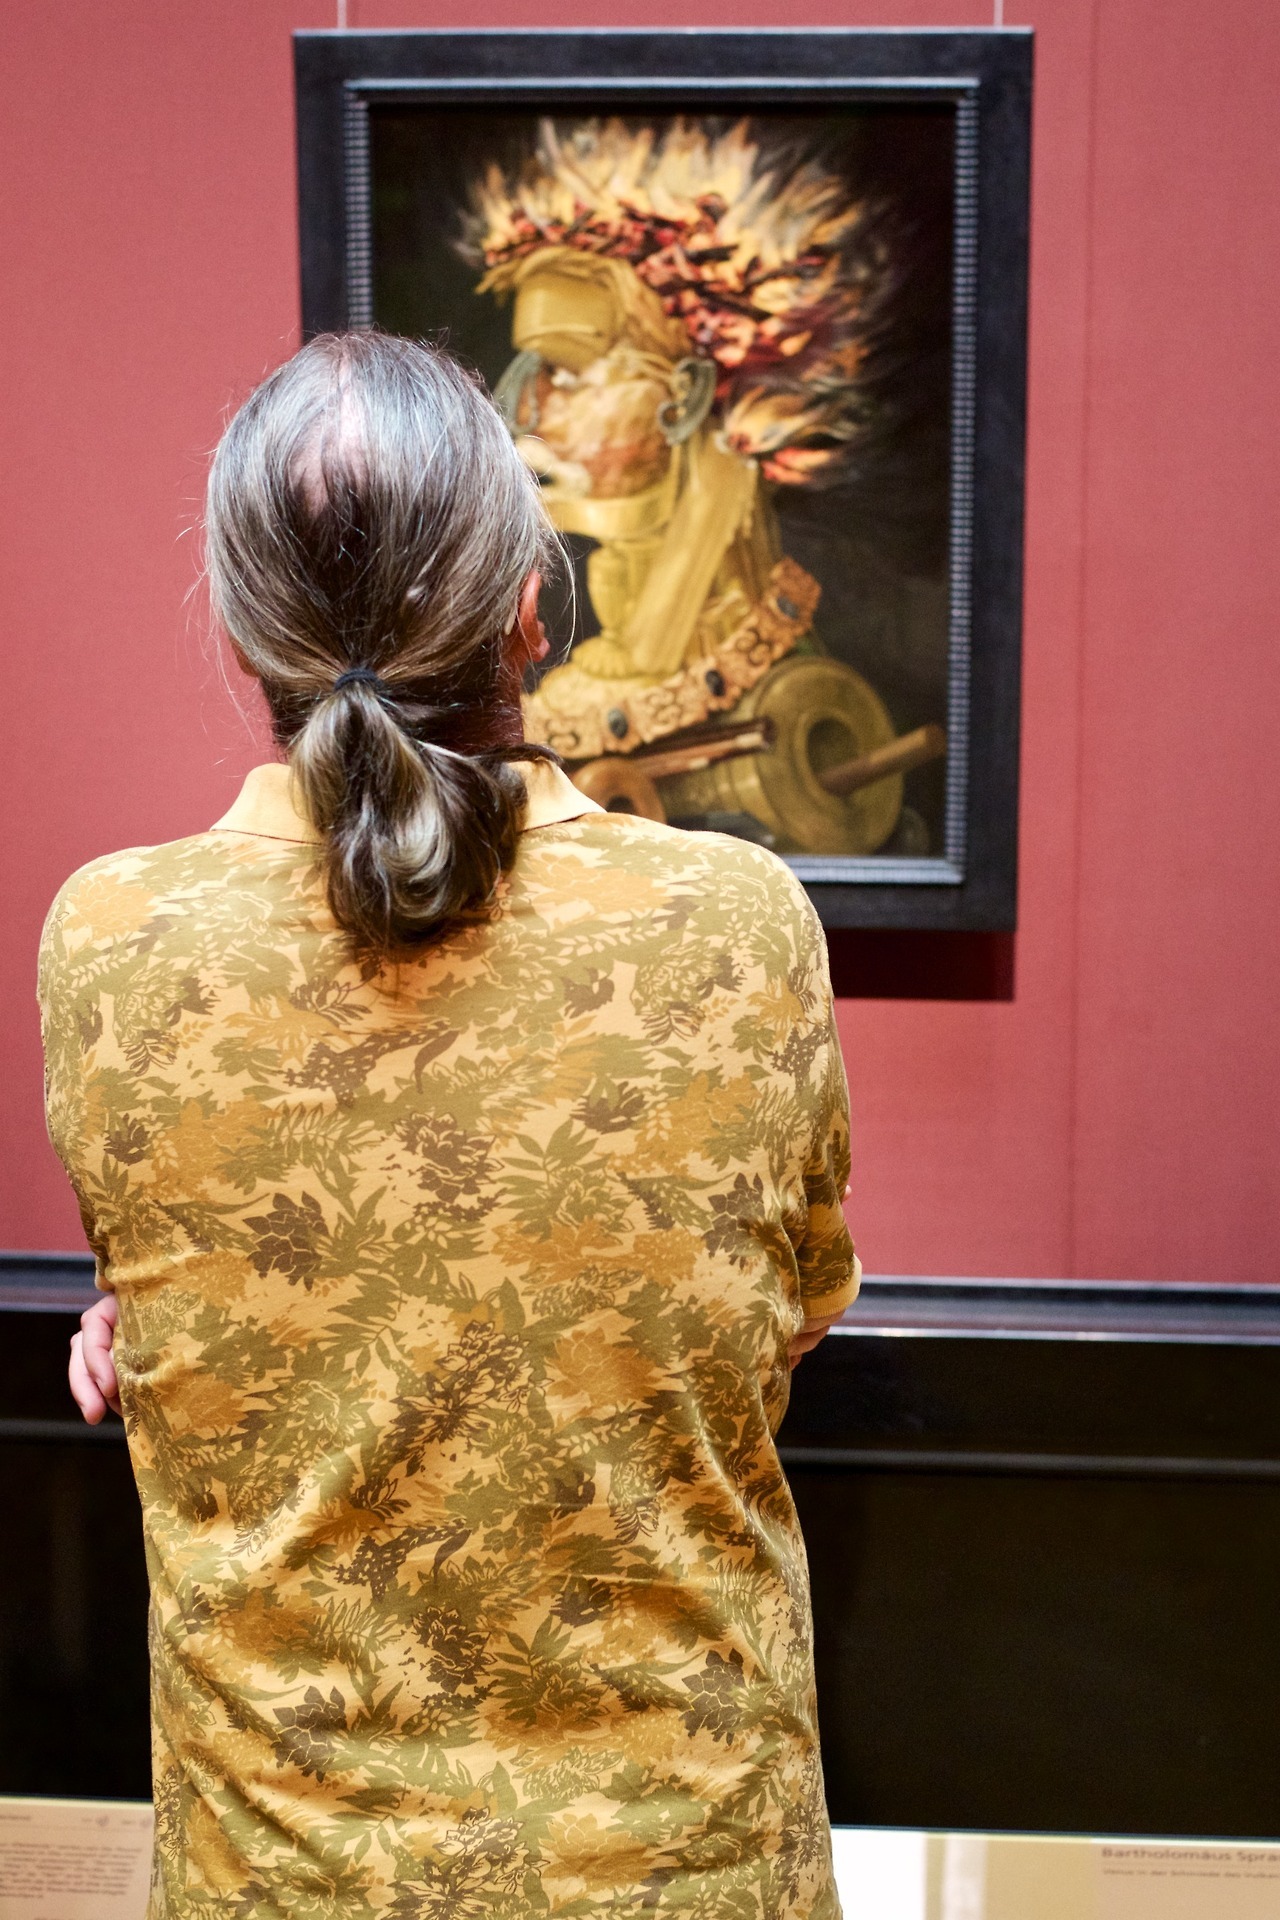 Австриец фотографирует посетителей музеев в сочетании с картинами